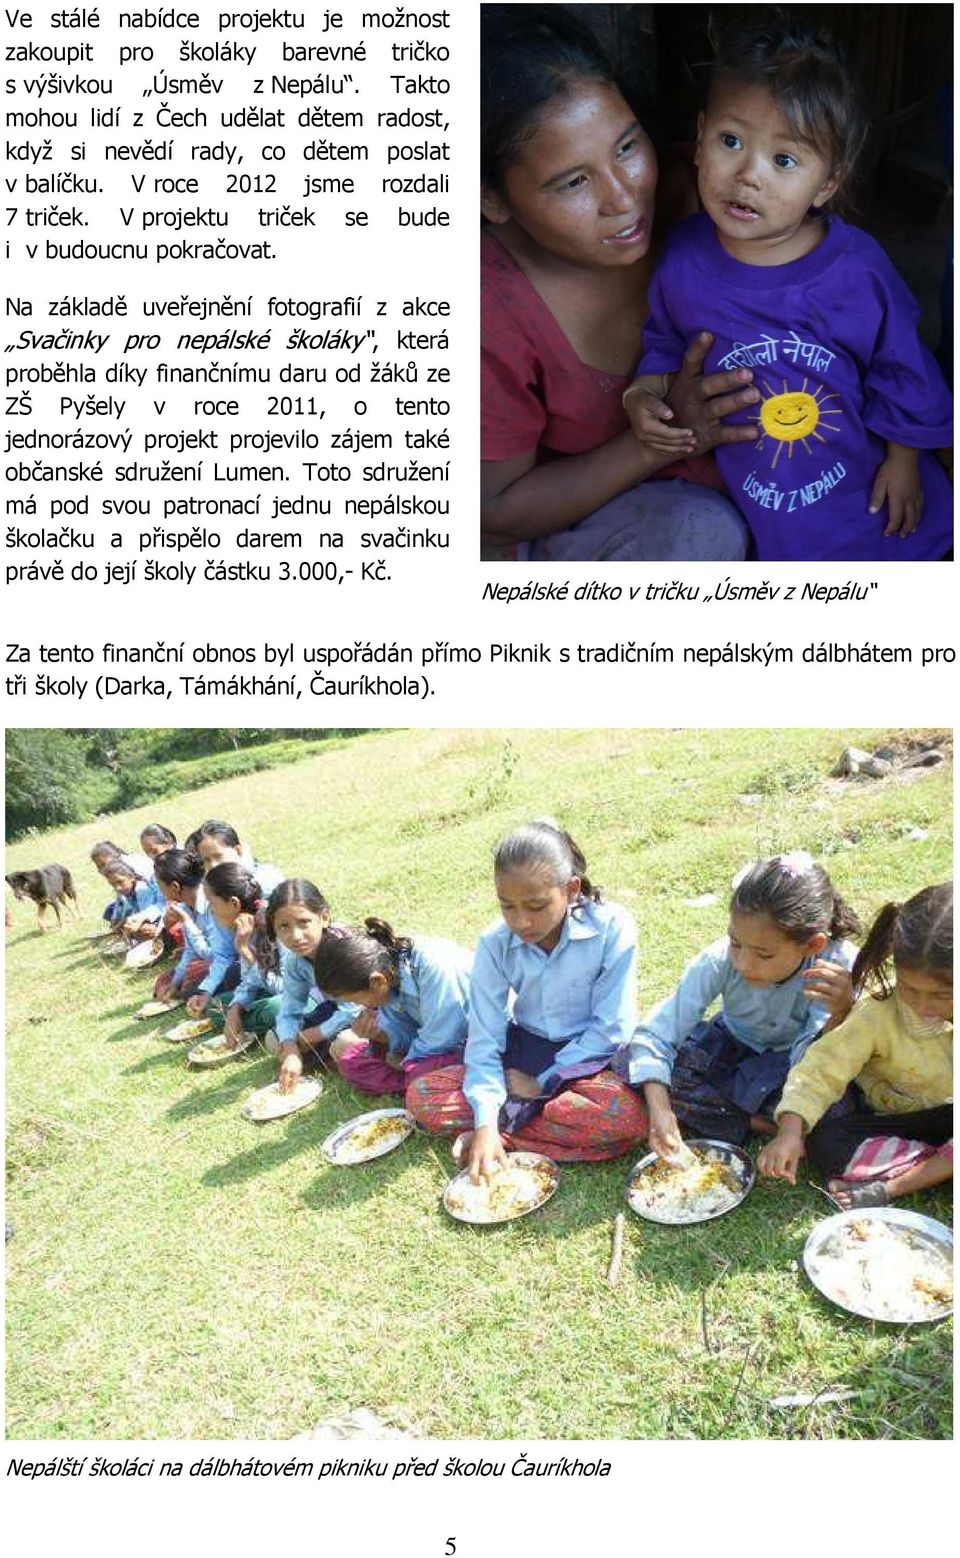 Na základě uveřejnění fotografií z akce Svačinky pro nepálské školáky, která proběhla díky finančnímu daru od žáků ze ZŠ Pyšely v roce 2011, o tento jednorázový projekt projevilo zájem také občanské